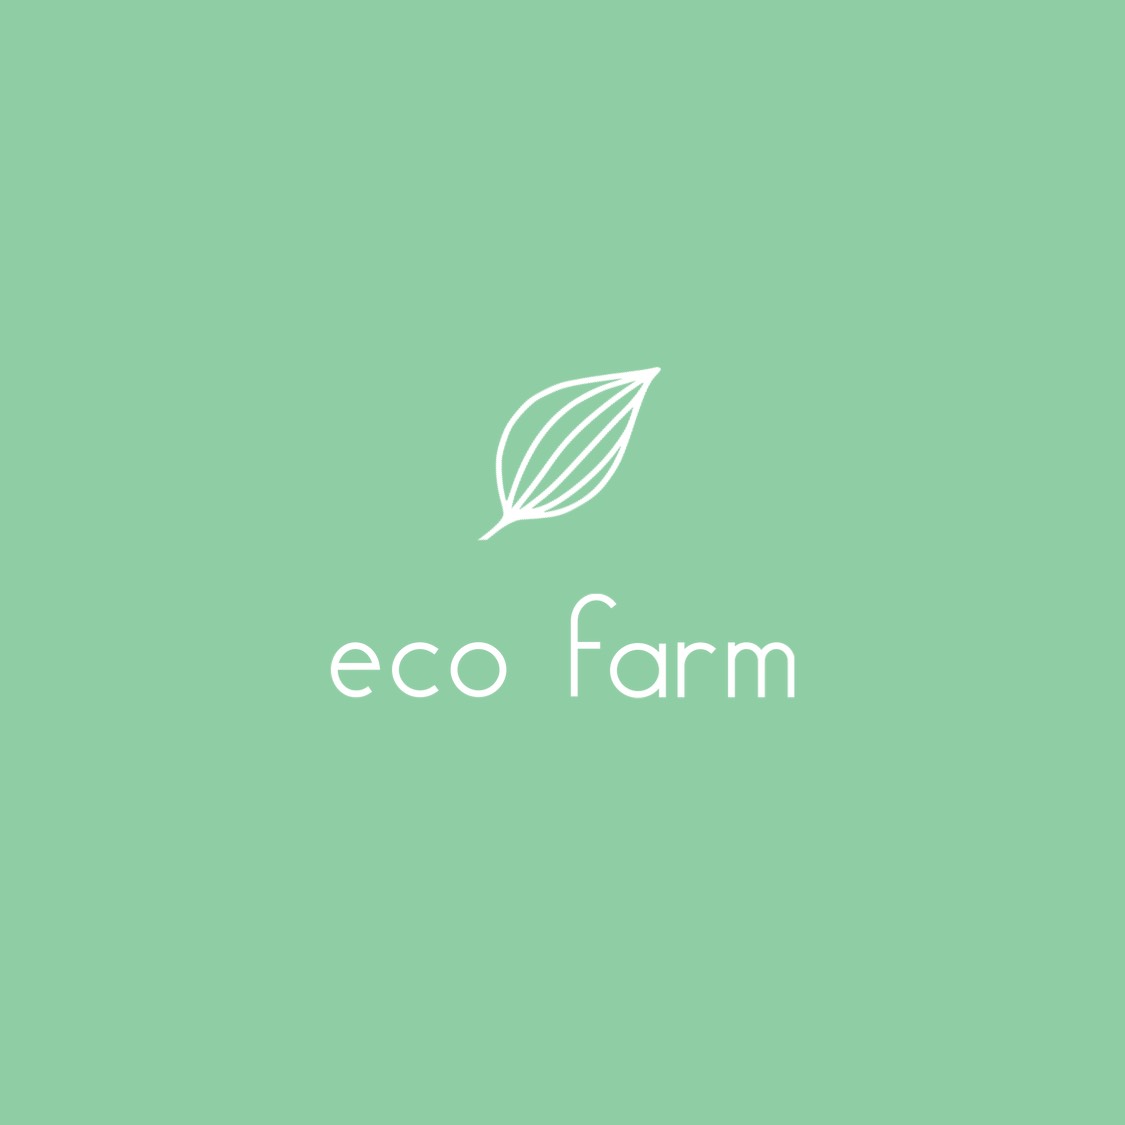 Leaf illustration eco green business logo template